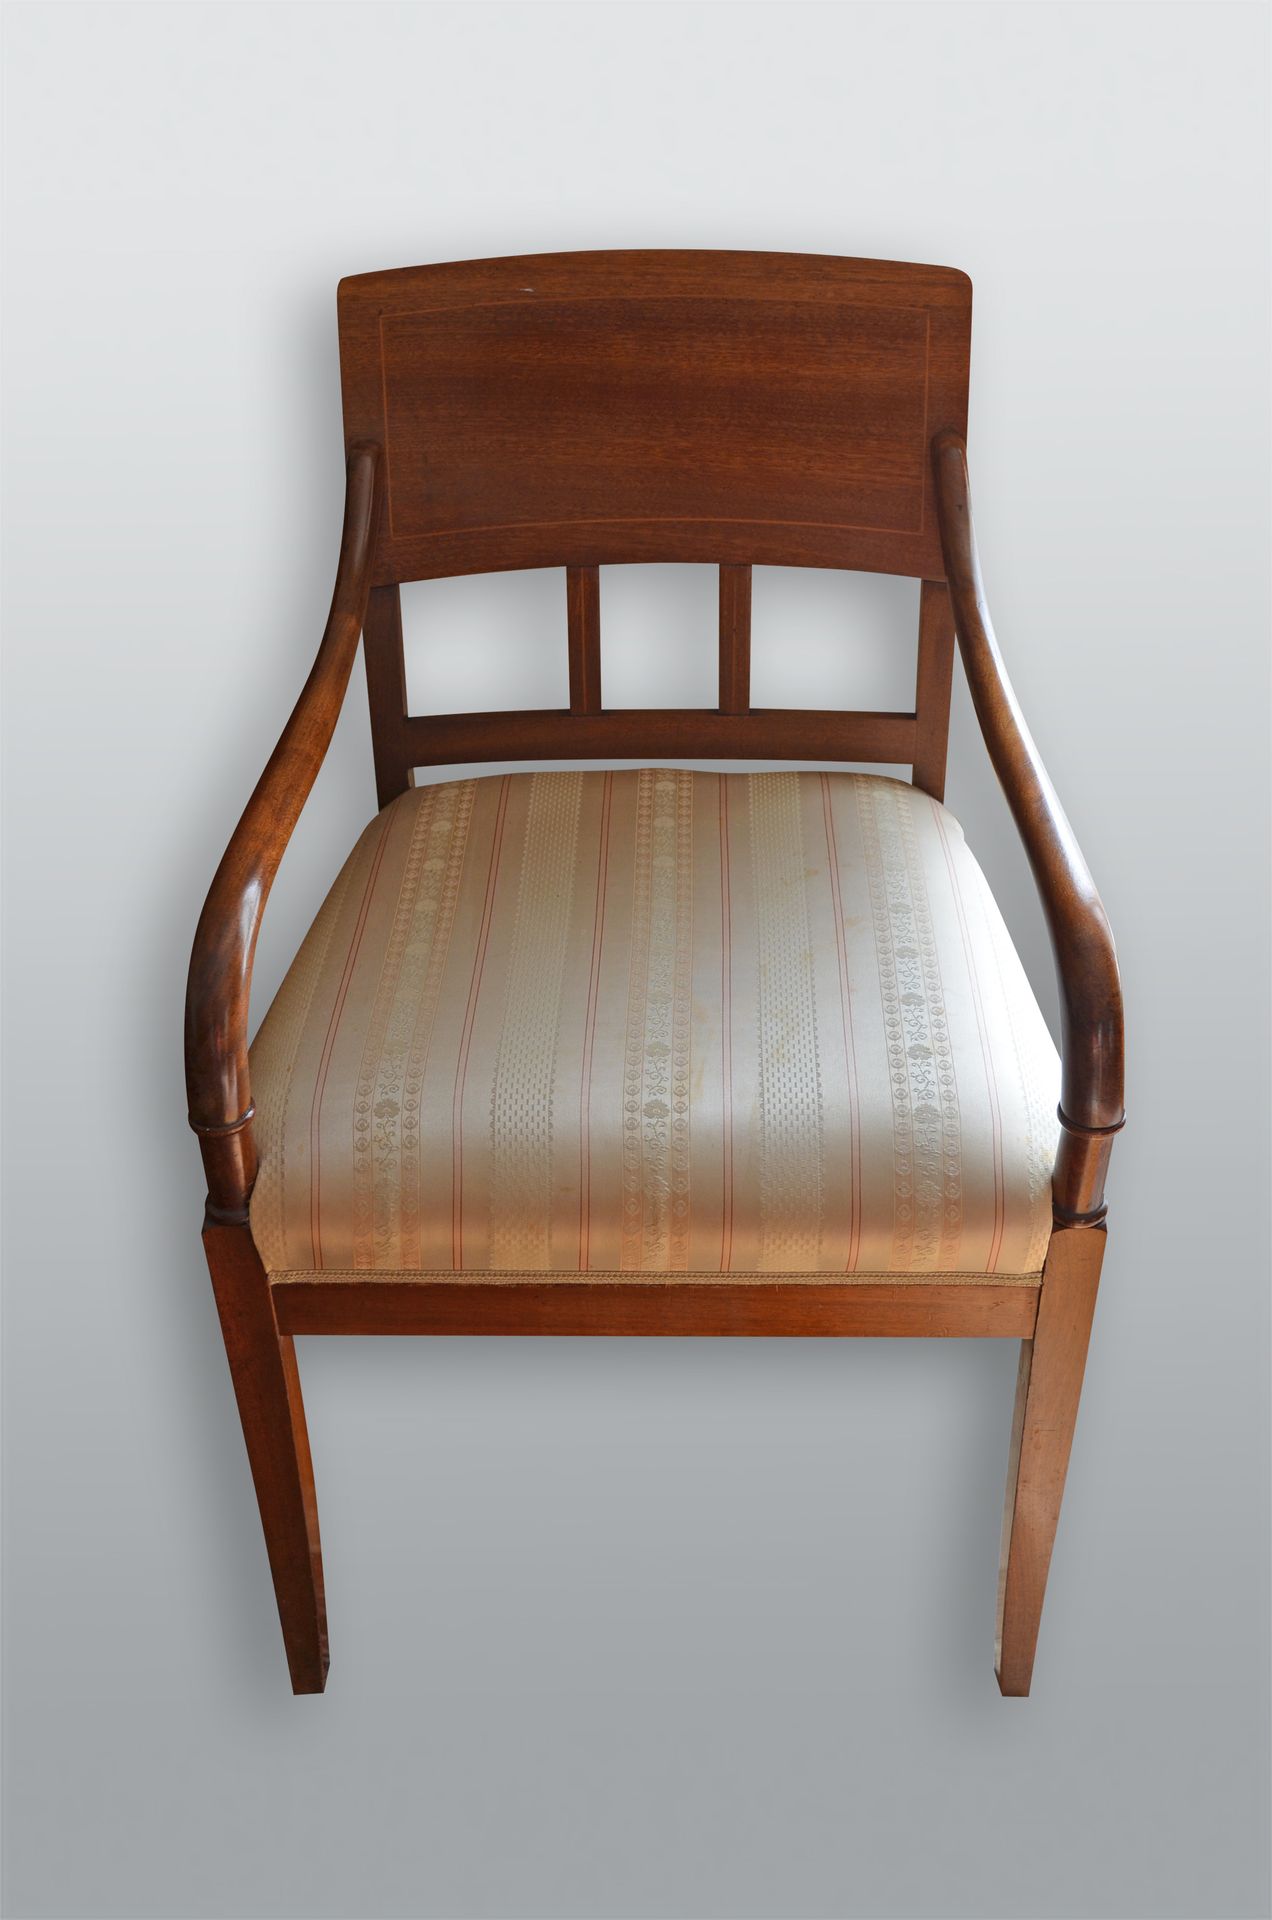 Armlehnsessel 胡桃木，有简单的镶嵌物。带有米色布套的比德梅尔椅。织物部分轻微染色，木头上有一些小裂缝。德国，约1830年。高x宽x深约89x55x&hellip;